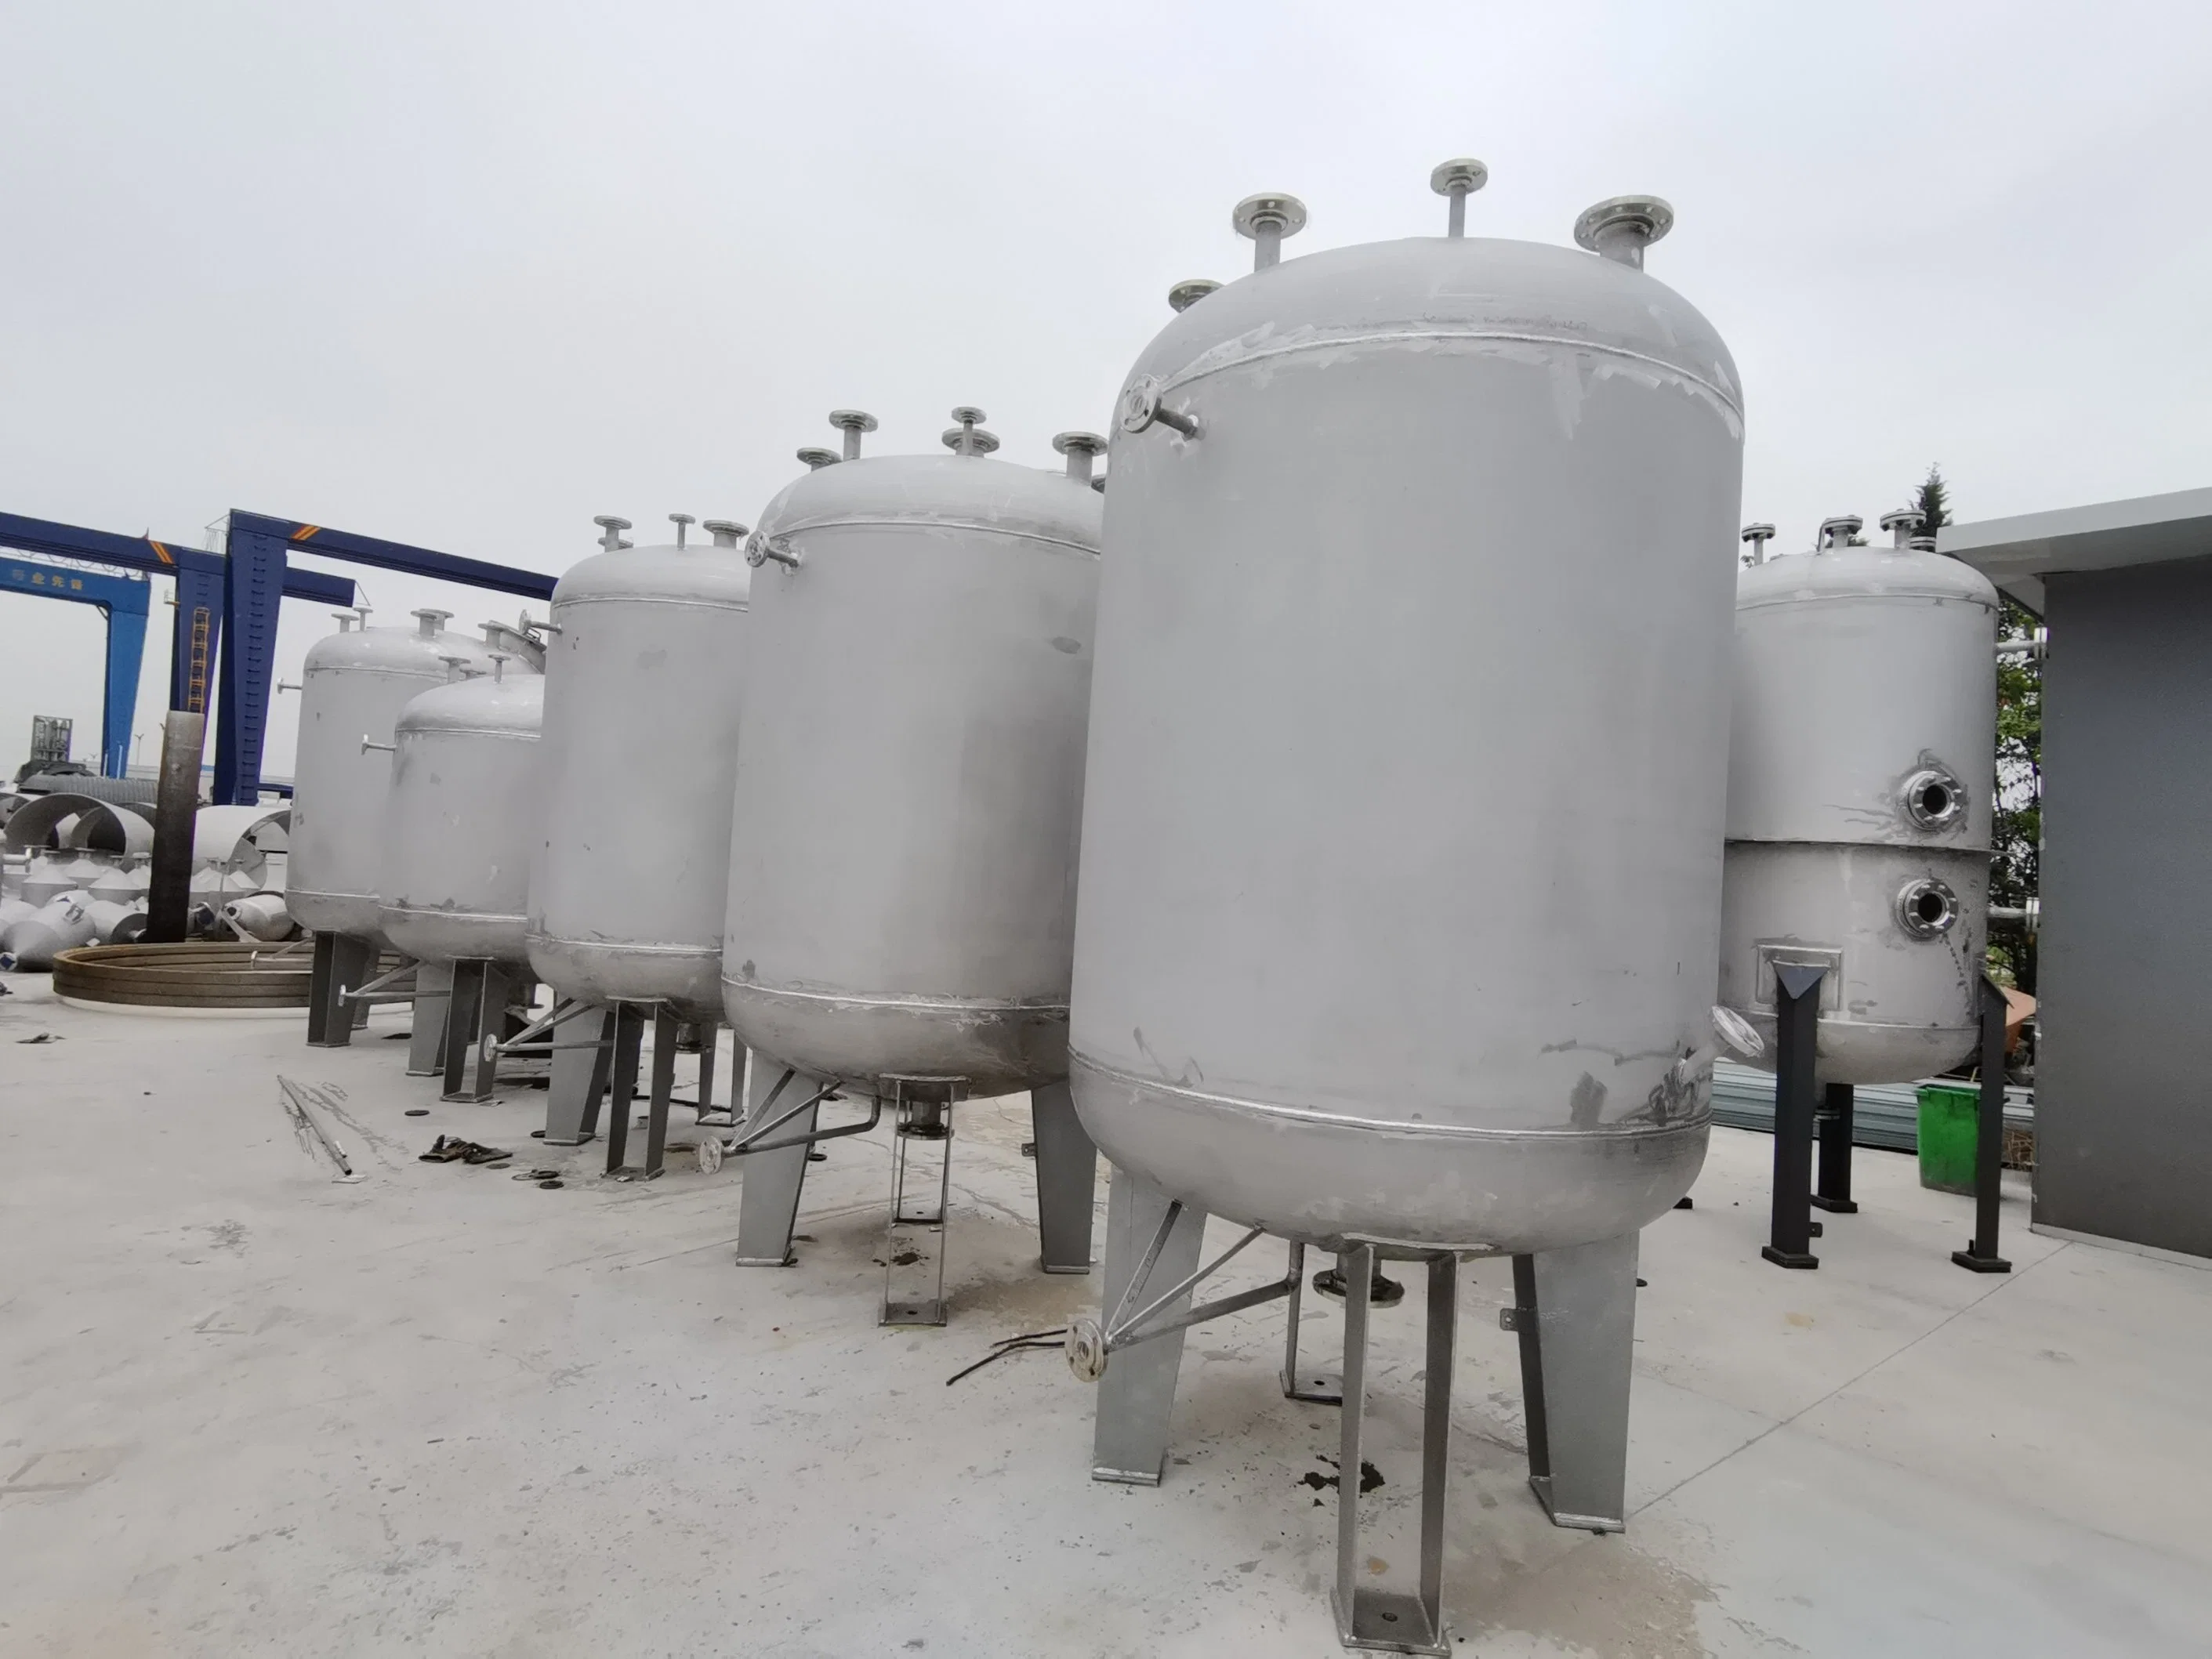 Depósito de armazenamento vertical em aço inoxidável Depósito de armazenamento de produtos químicos e de pressão